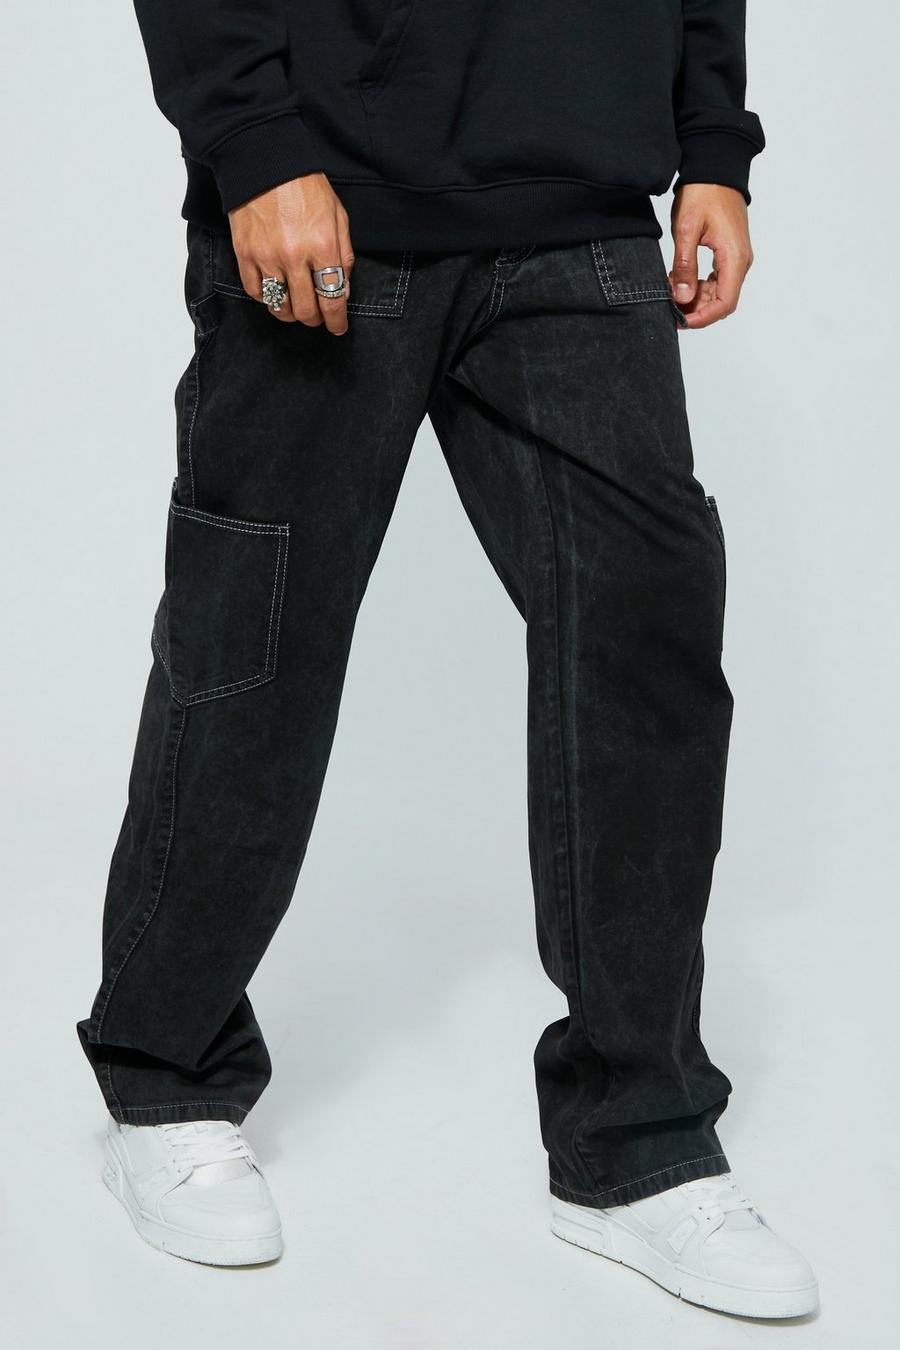 שחור מכנסי דגמ'ח משוחררים ומשופשפים בסגנון נגרים, לגברים גבוהים 